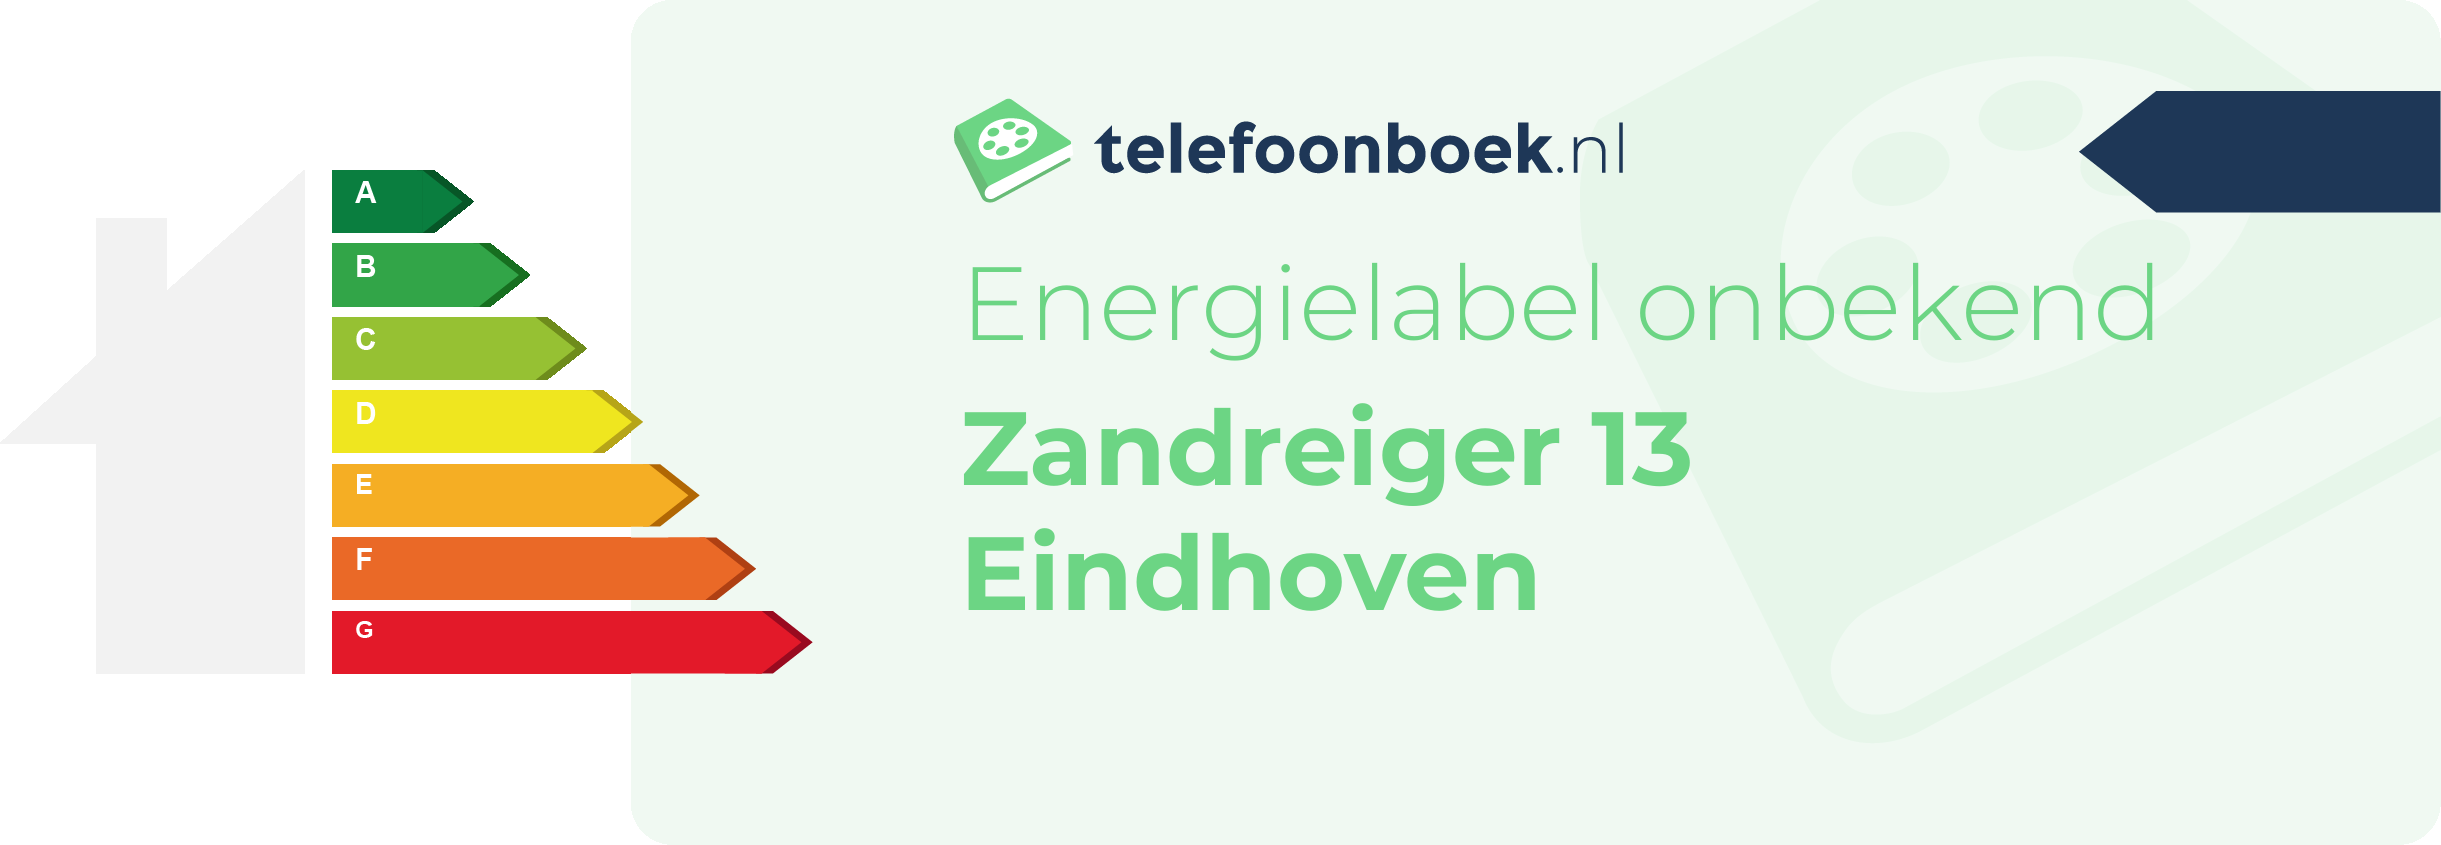 Energielabel Zandreiger 13 Eindhoven